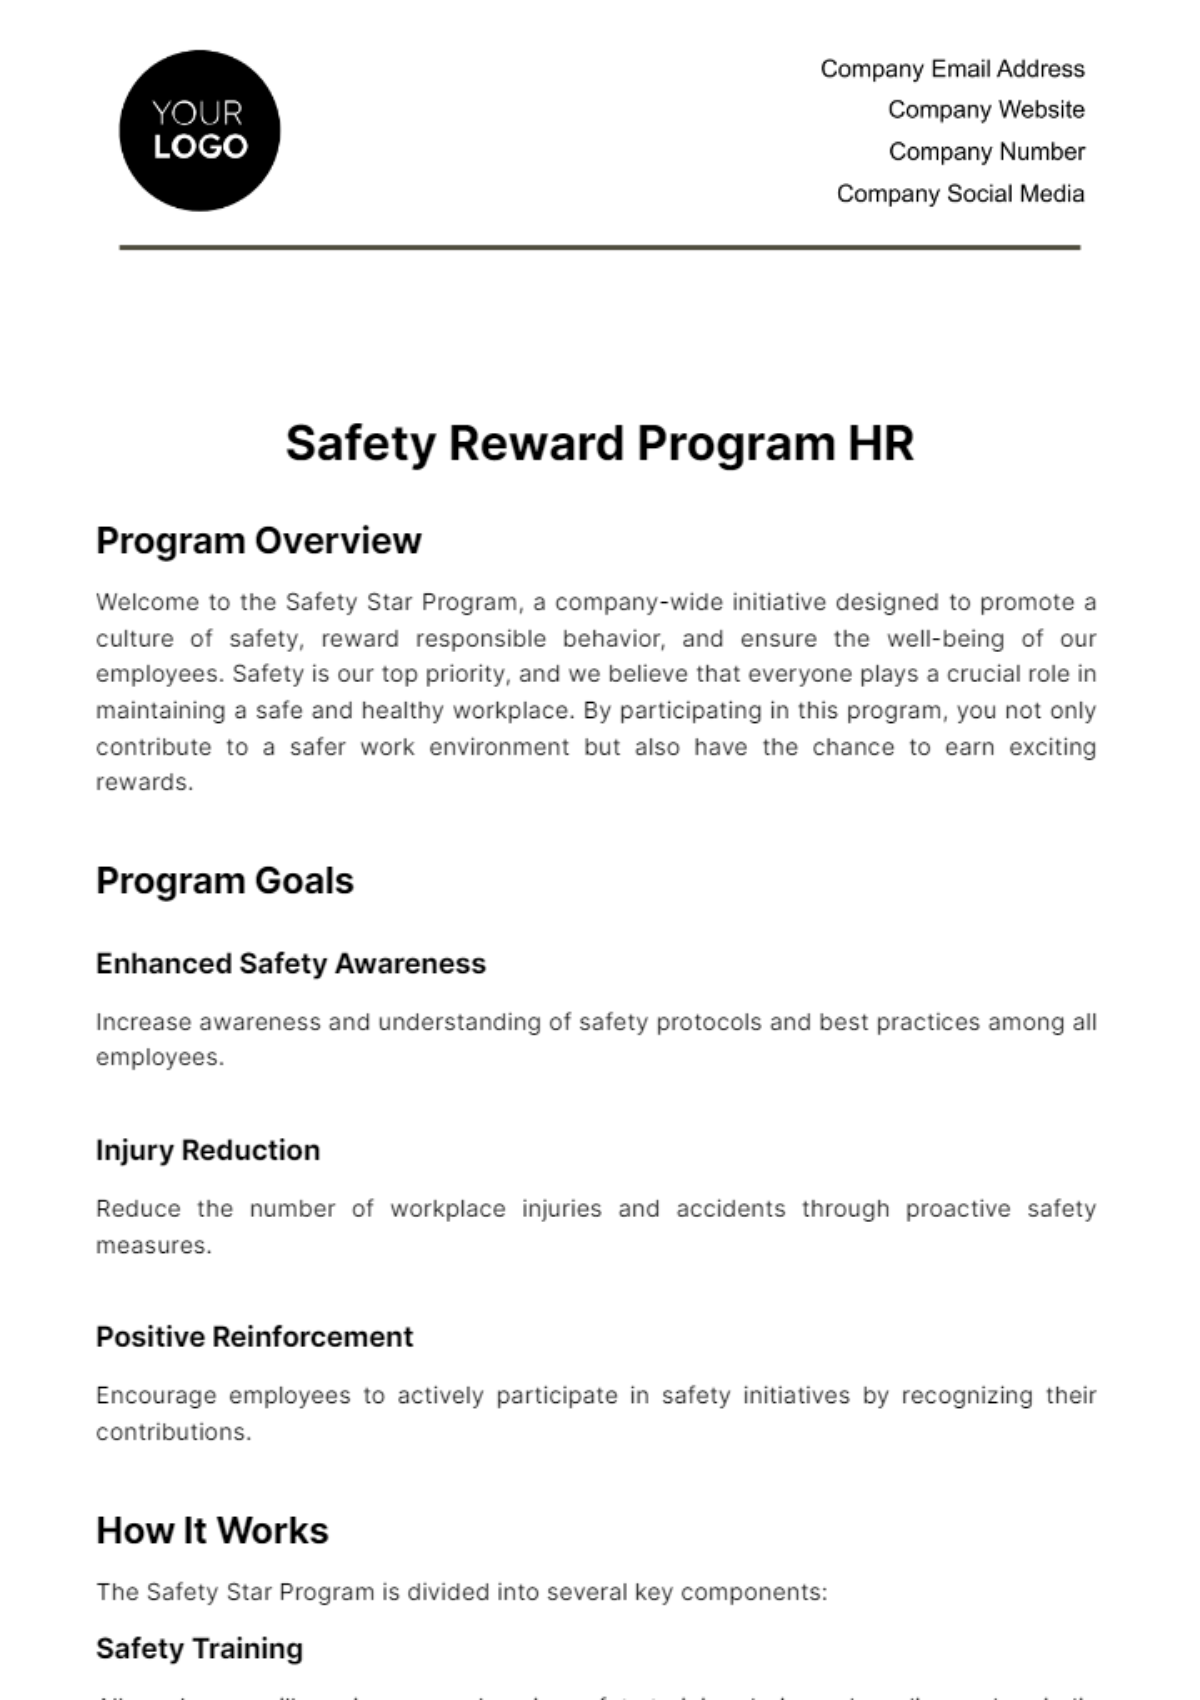 Safety Reward Program HR Template